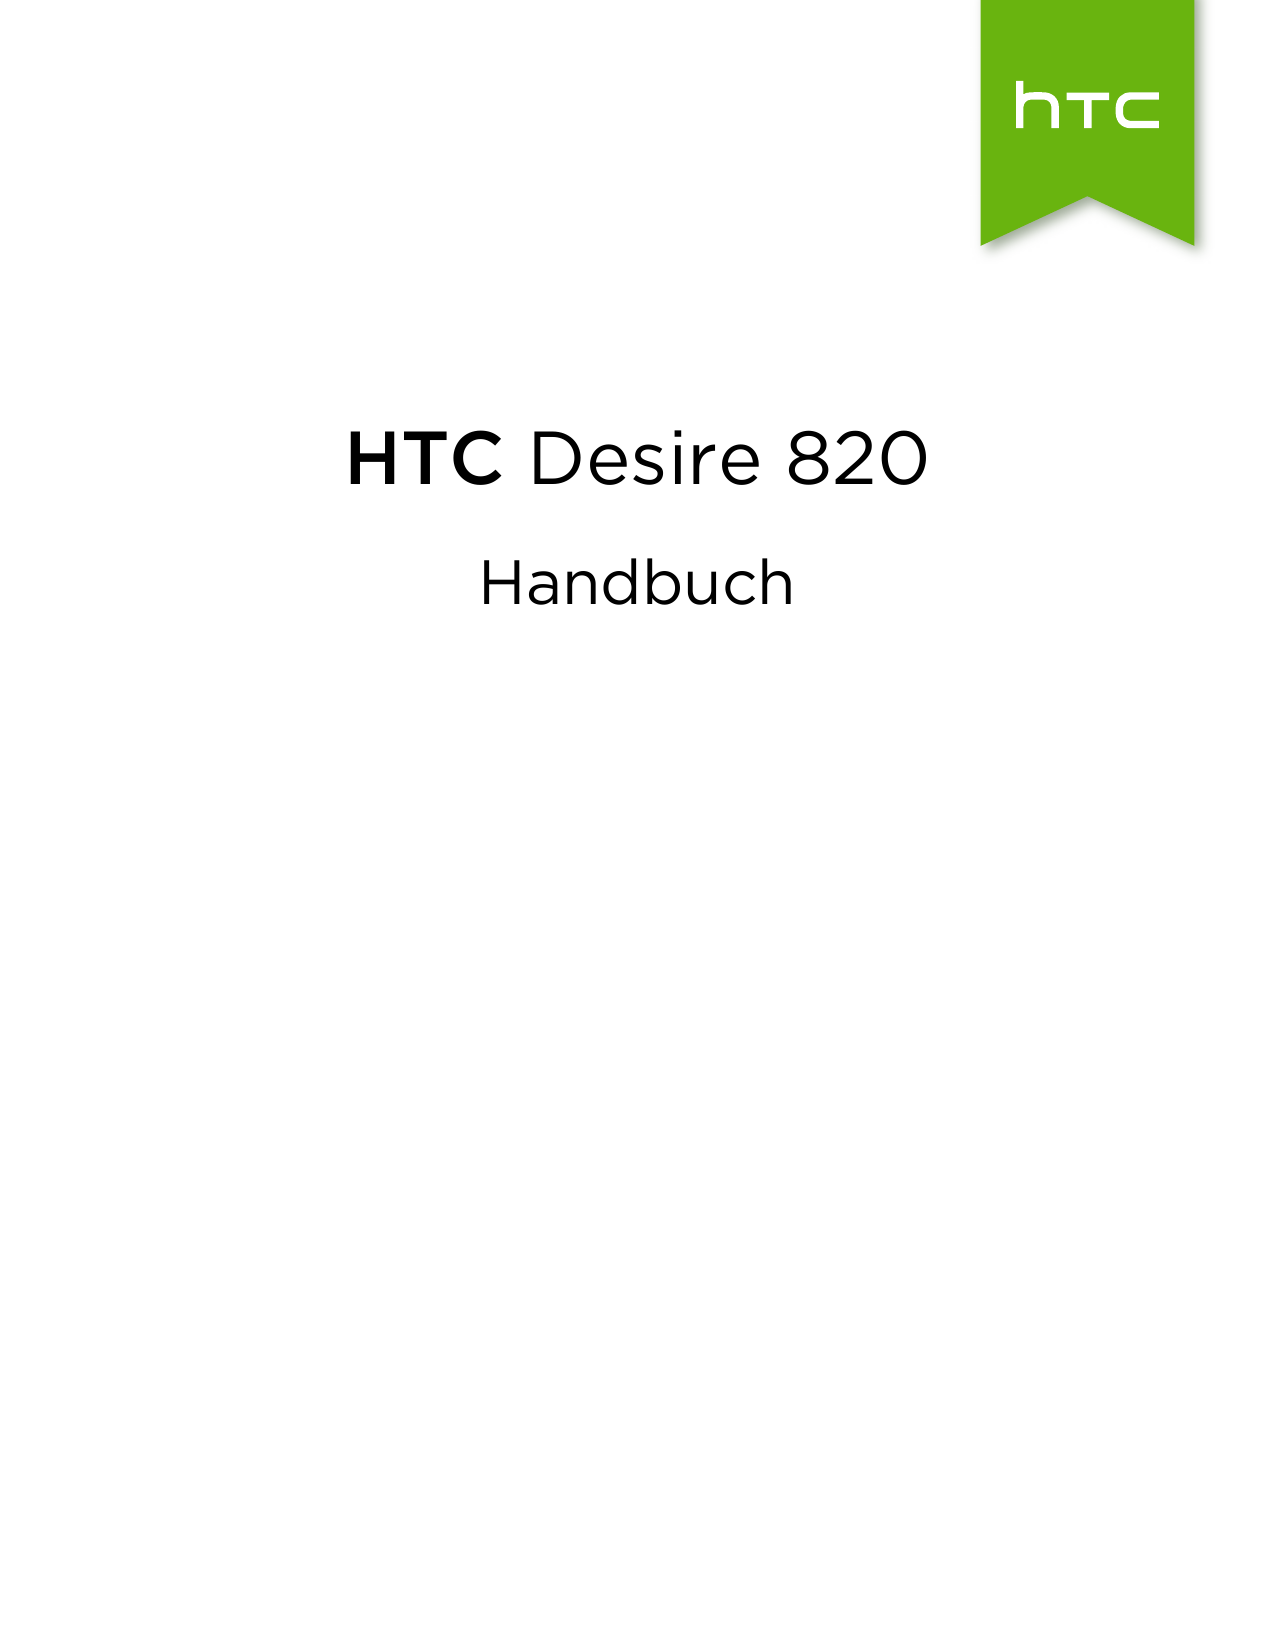 HTC Desire 820Handbuch